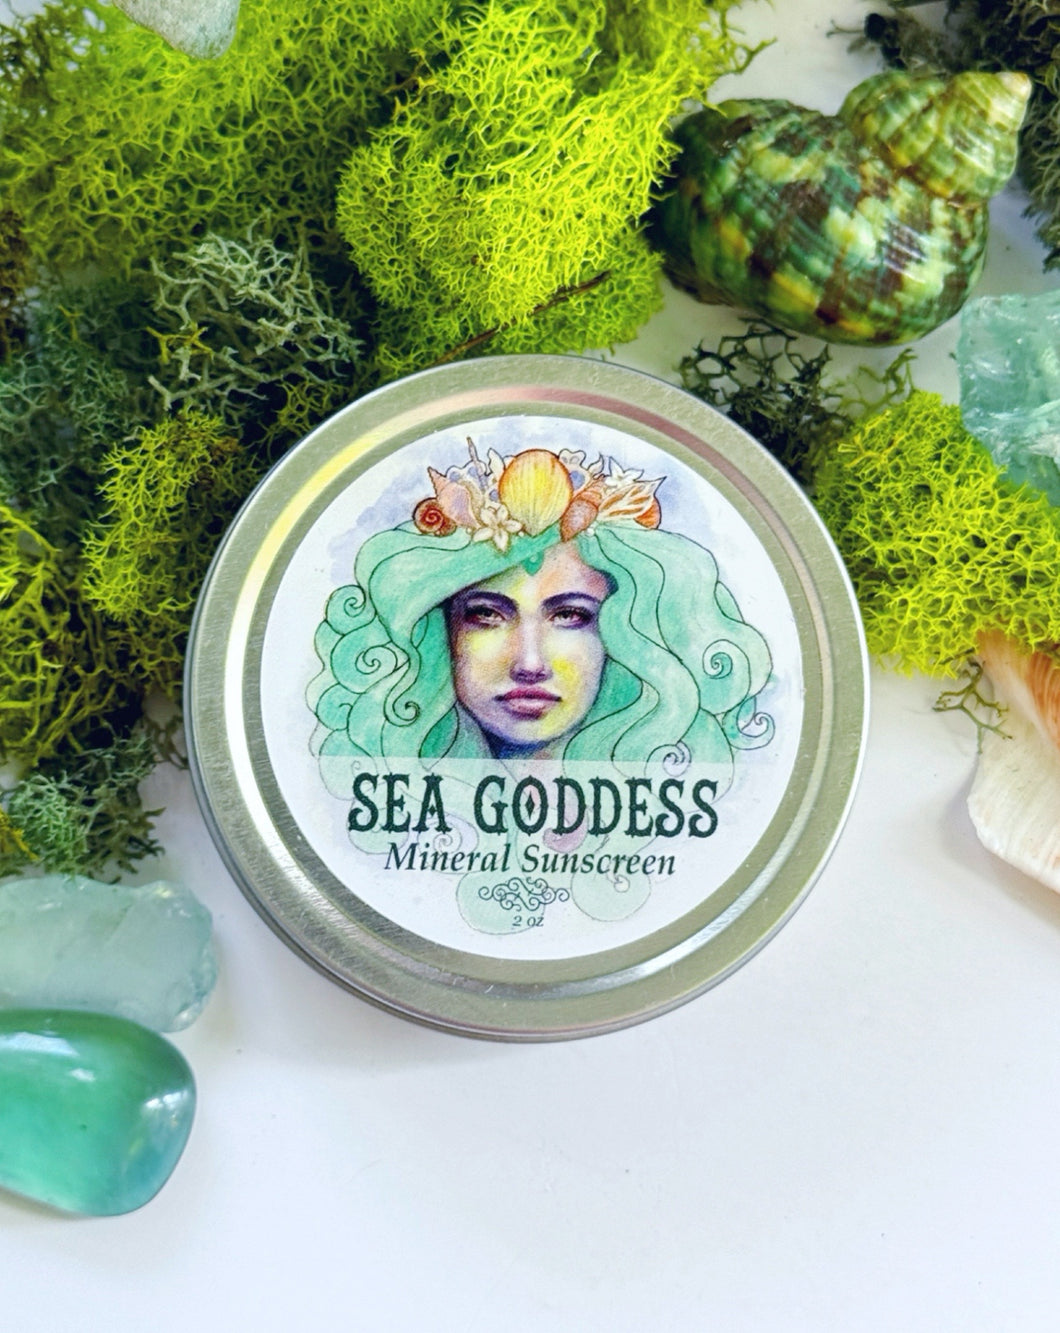 Sea Goddess Sunscreen Butter